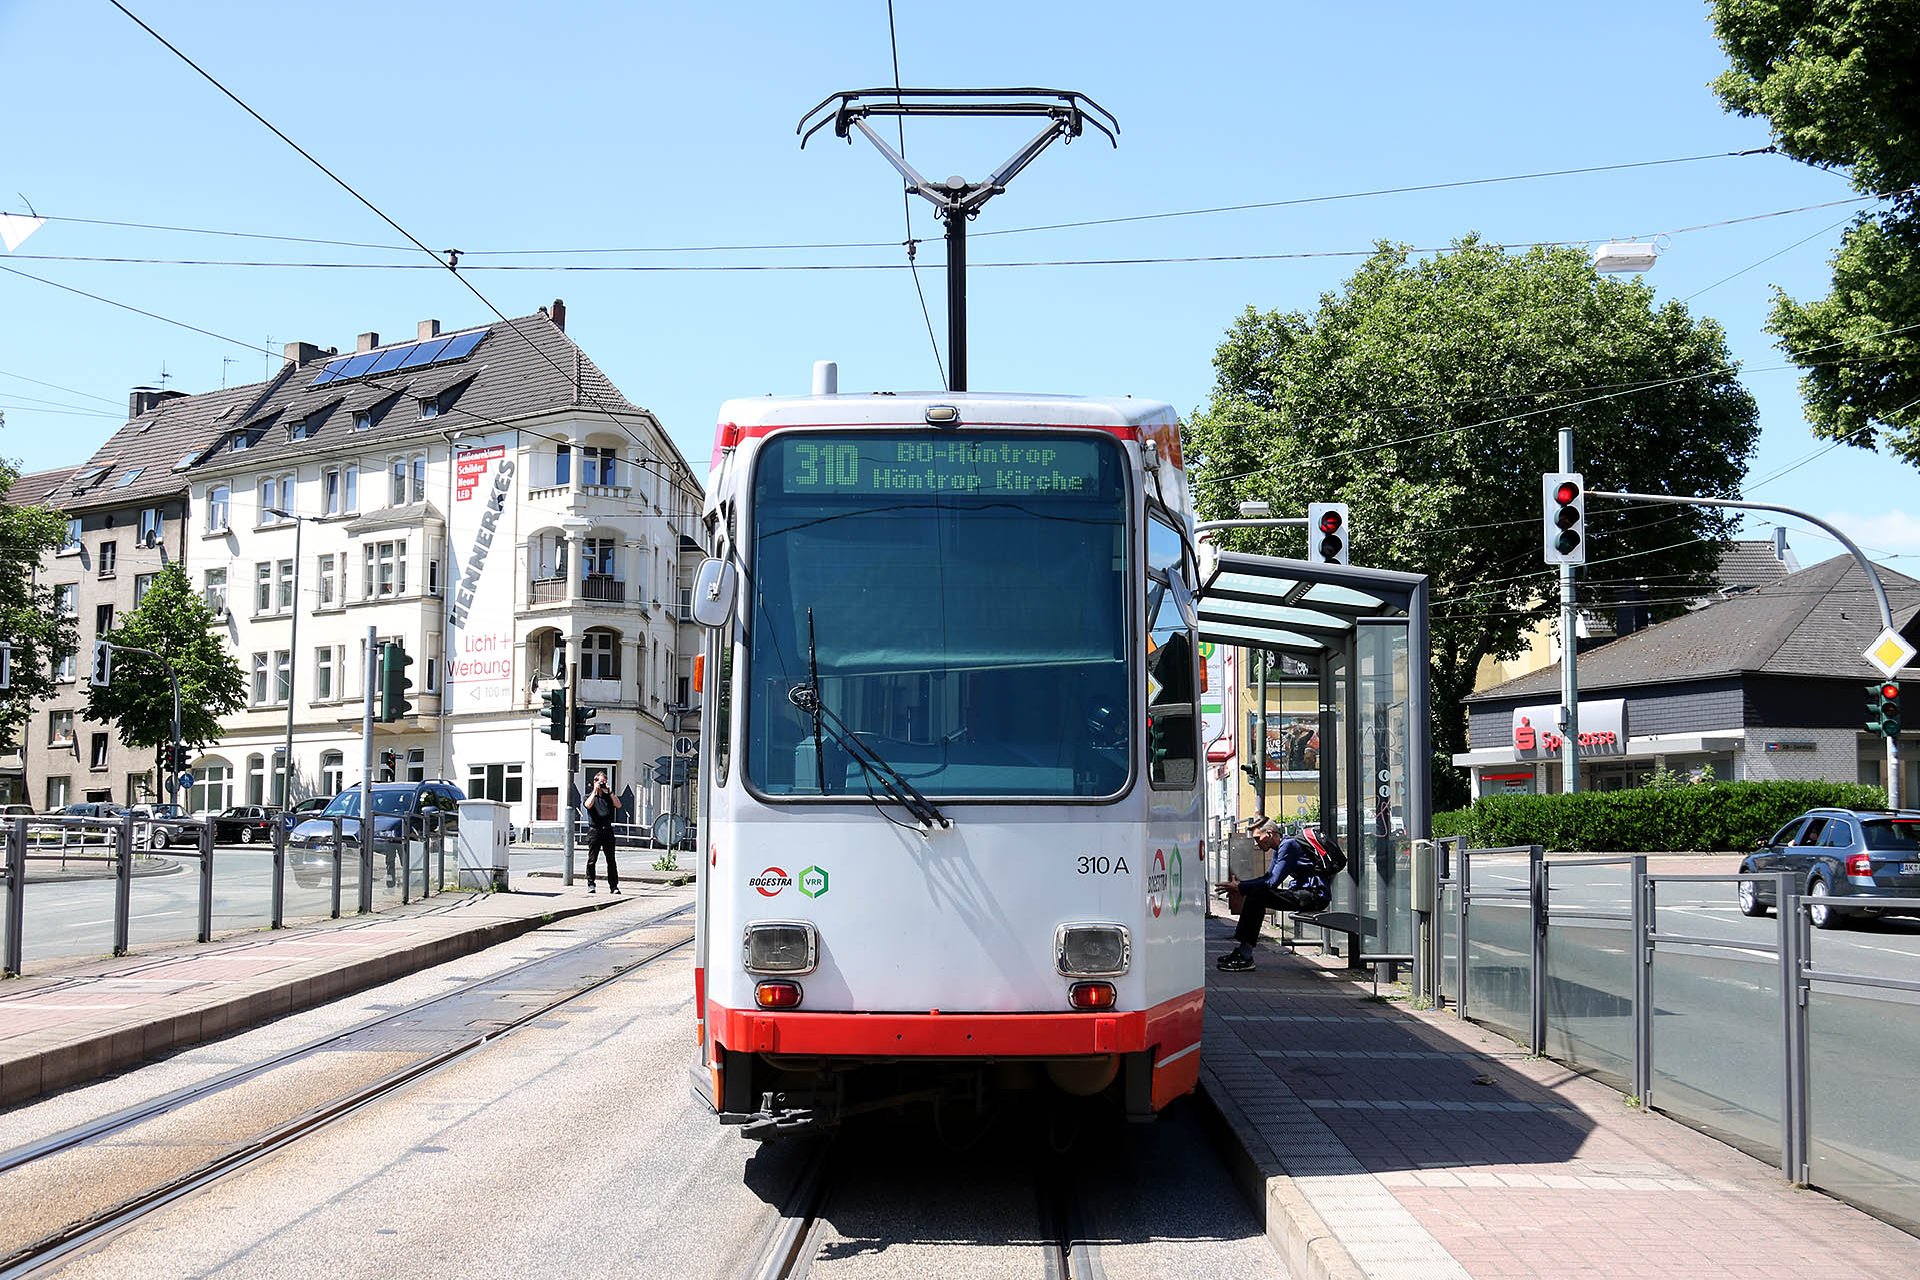 M6S 310 Sie wurden nach und nach von den Stadler Variobahnen abgelöst, Anfang 2018 waren noch 14 in Betrieb. They were replaced by Stadler Variobahn trams. At the beginning of 2018 some 14 of them were still in service.